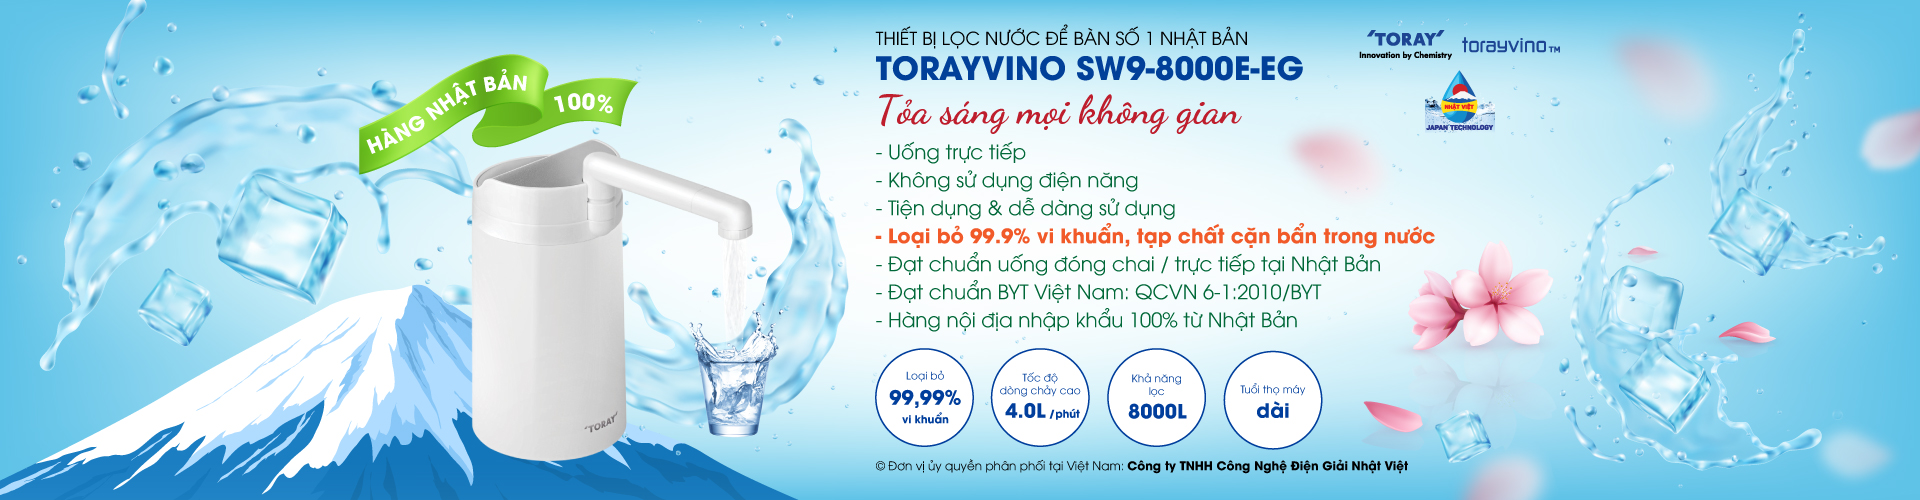 TORAYVINO - Thiết bị lọc nước chất lượng cao từ Nhật Bản